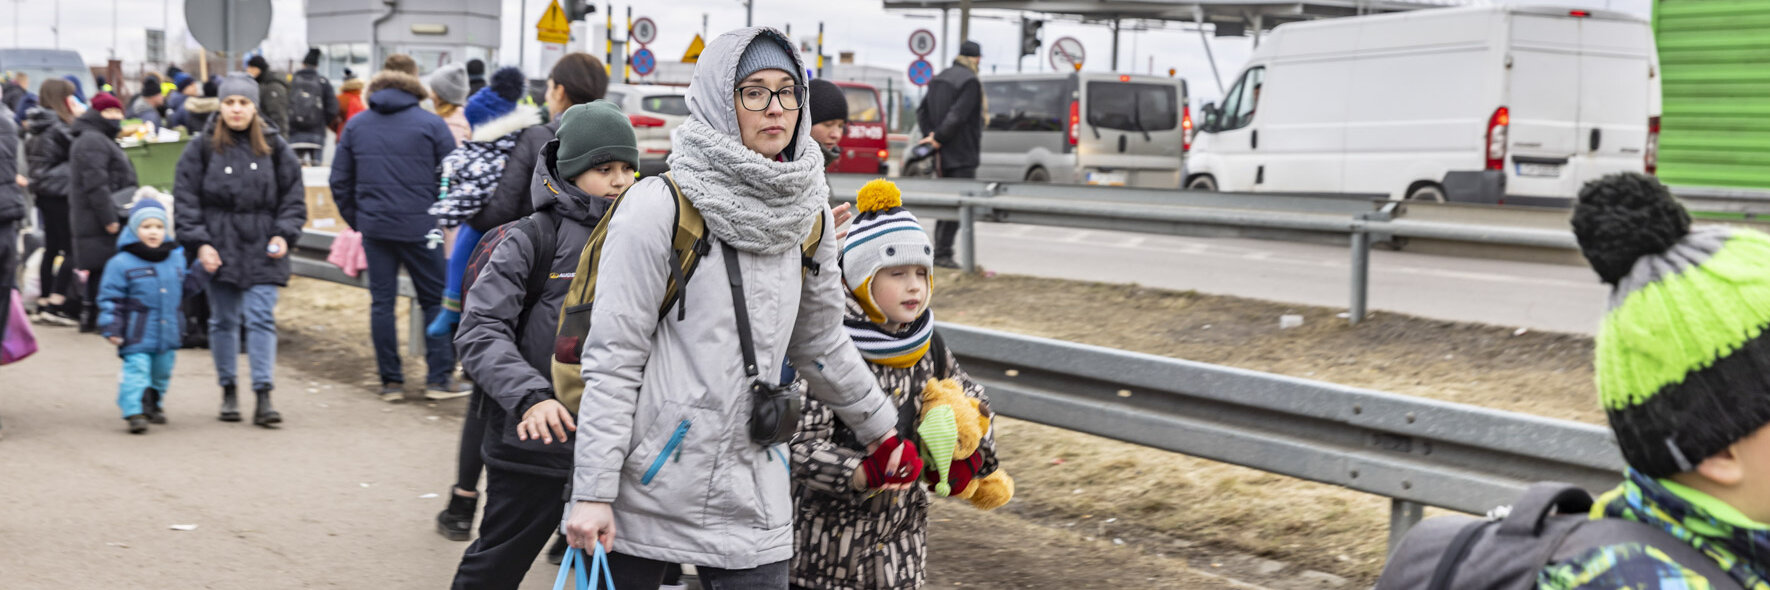 Eine ukrainische Familie auf der Flucht.